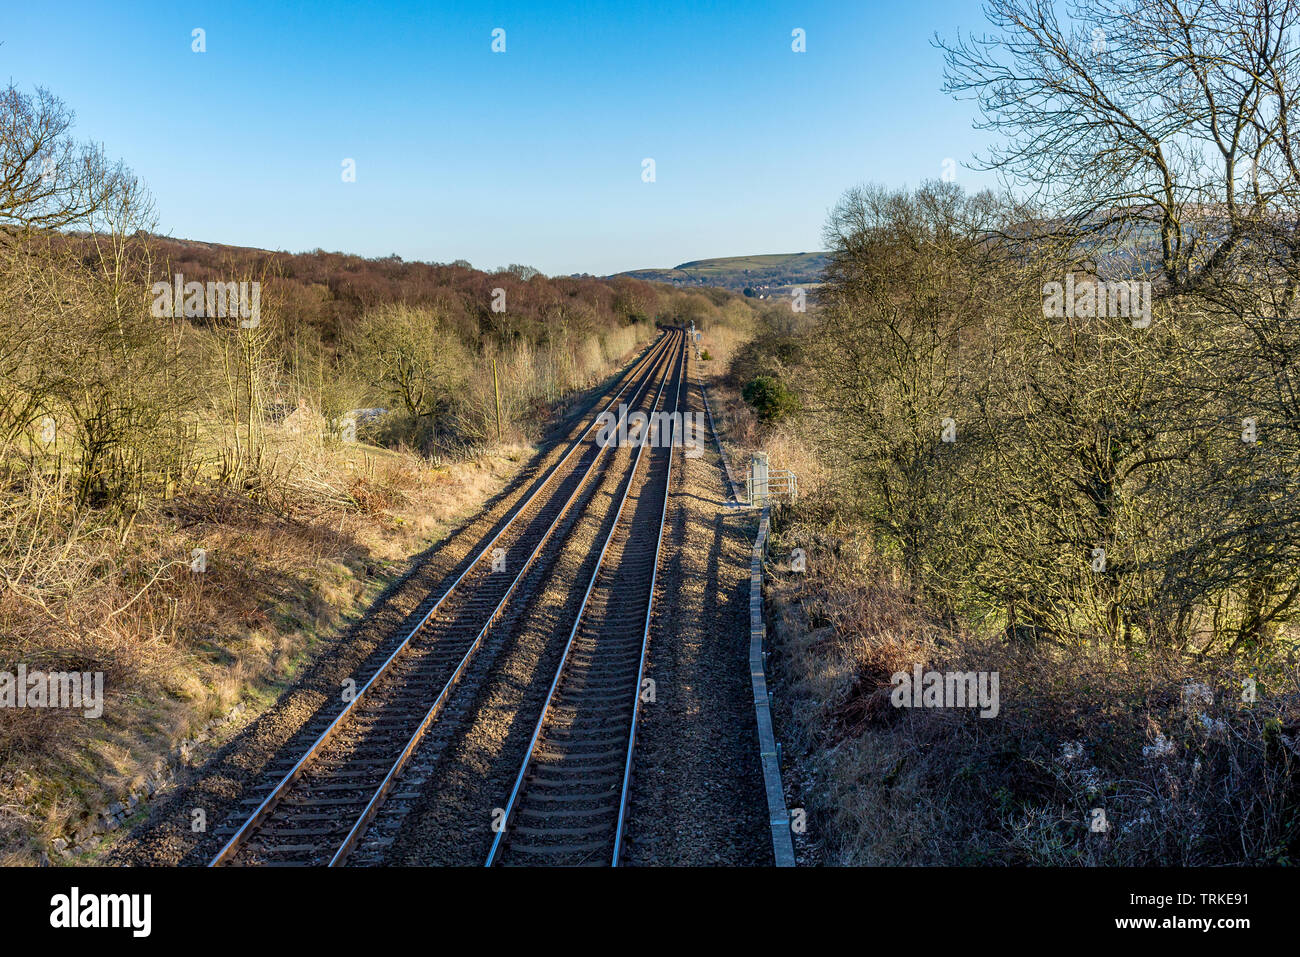 Vista en perspectiva de las vías del ferrocarril, pasando por countryide, Cheshire, Reino Unido. Foto de stock